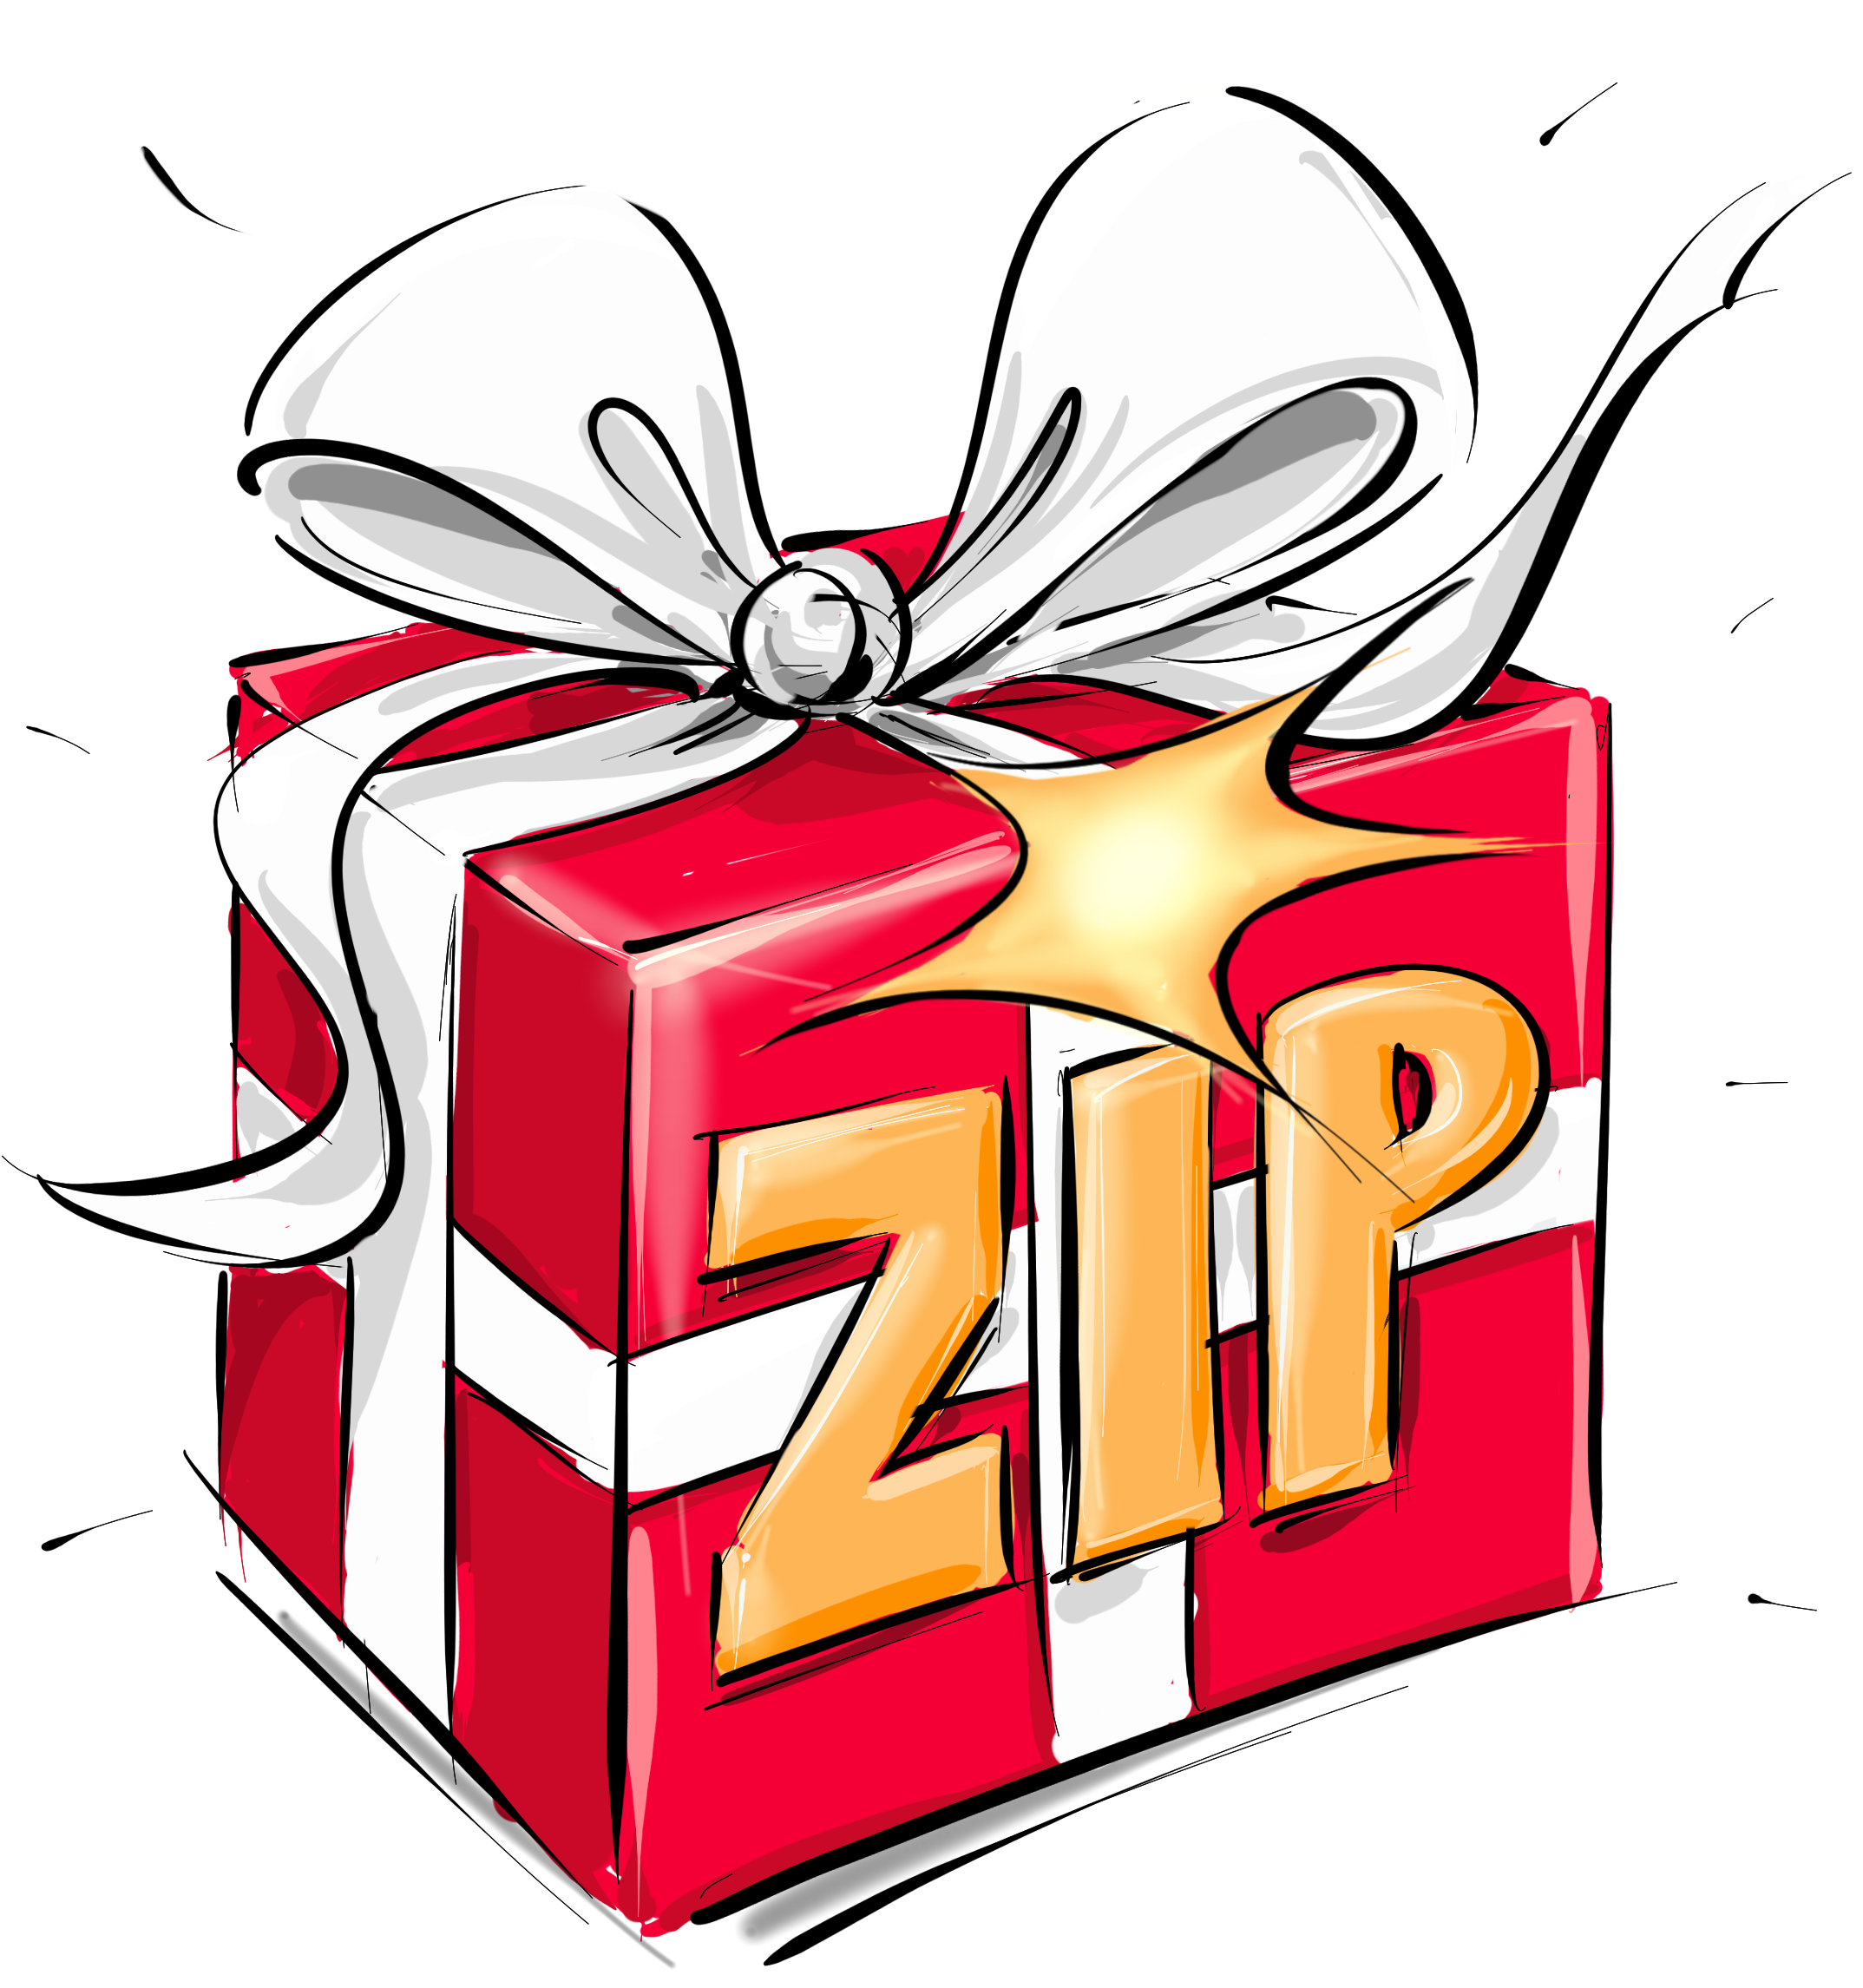 zip_geschenk_niconardo